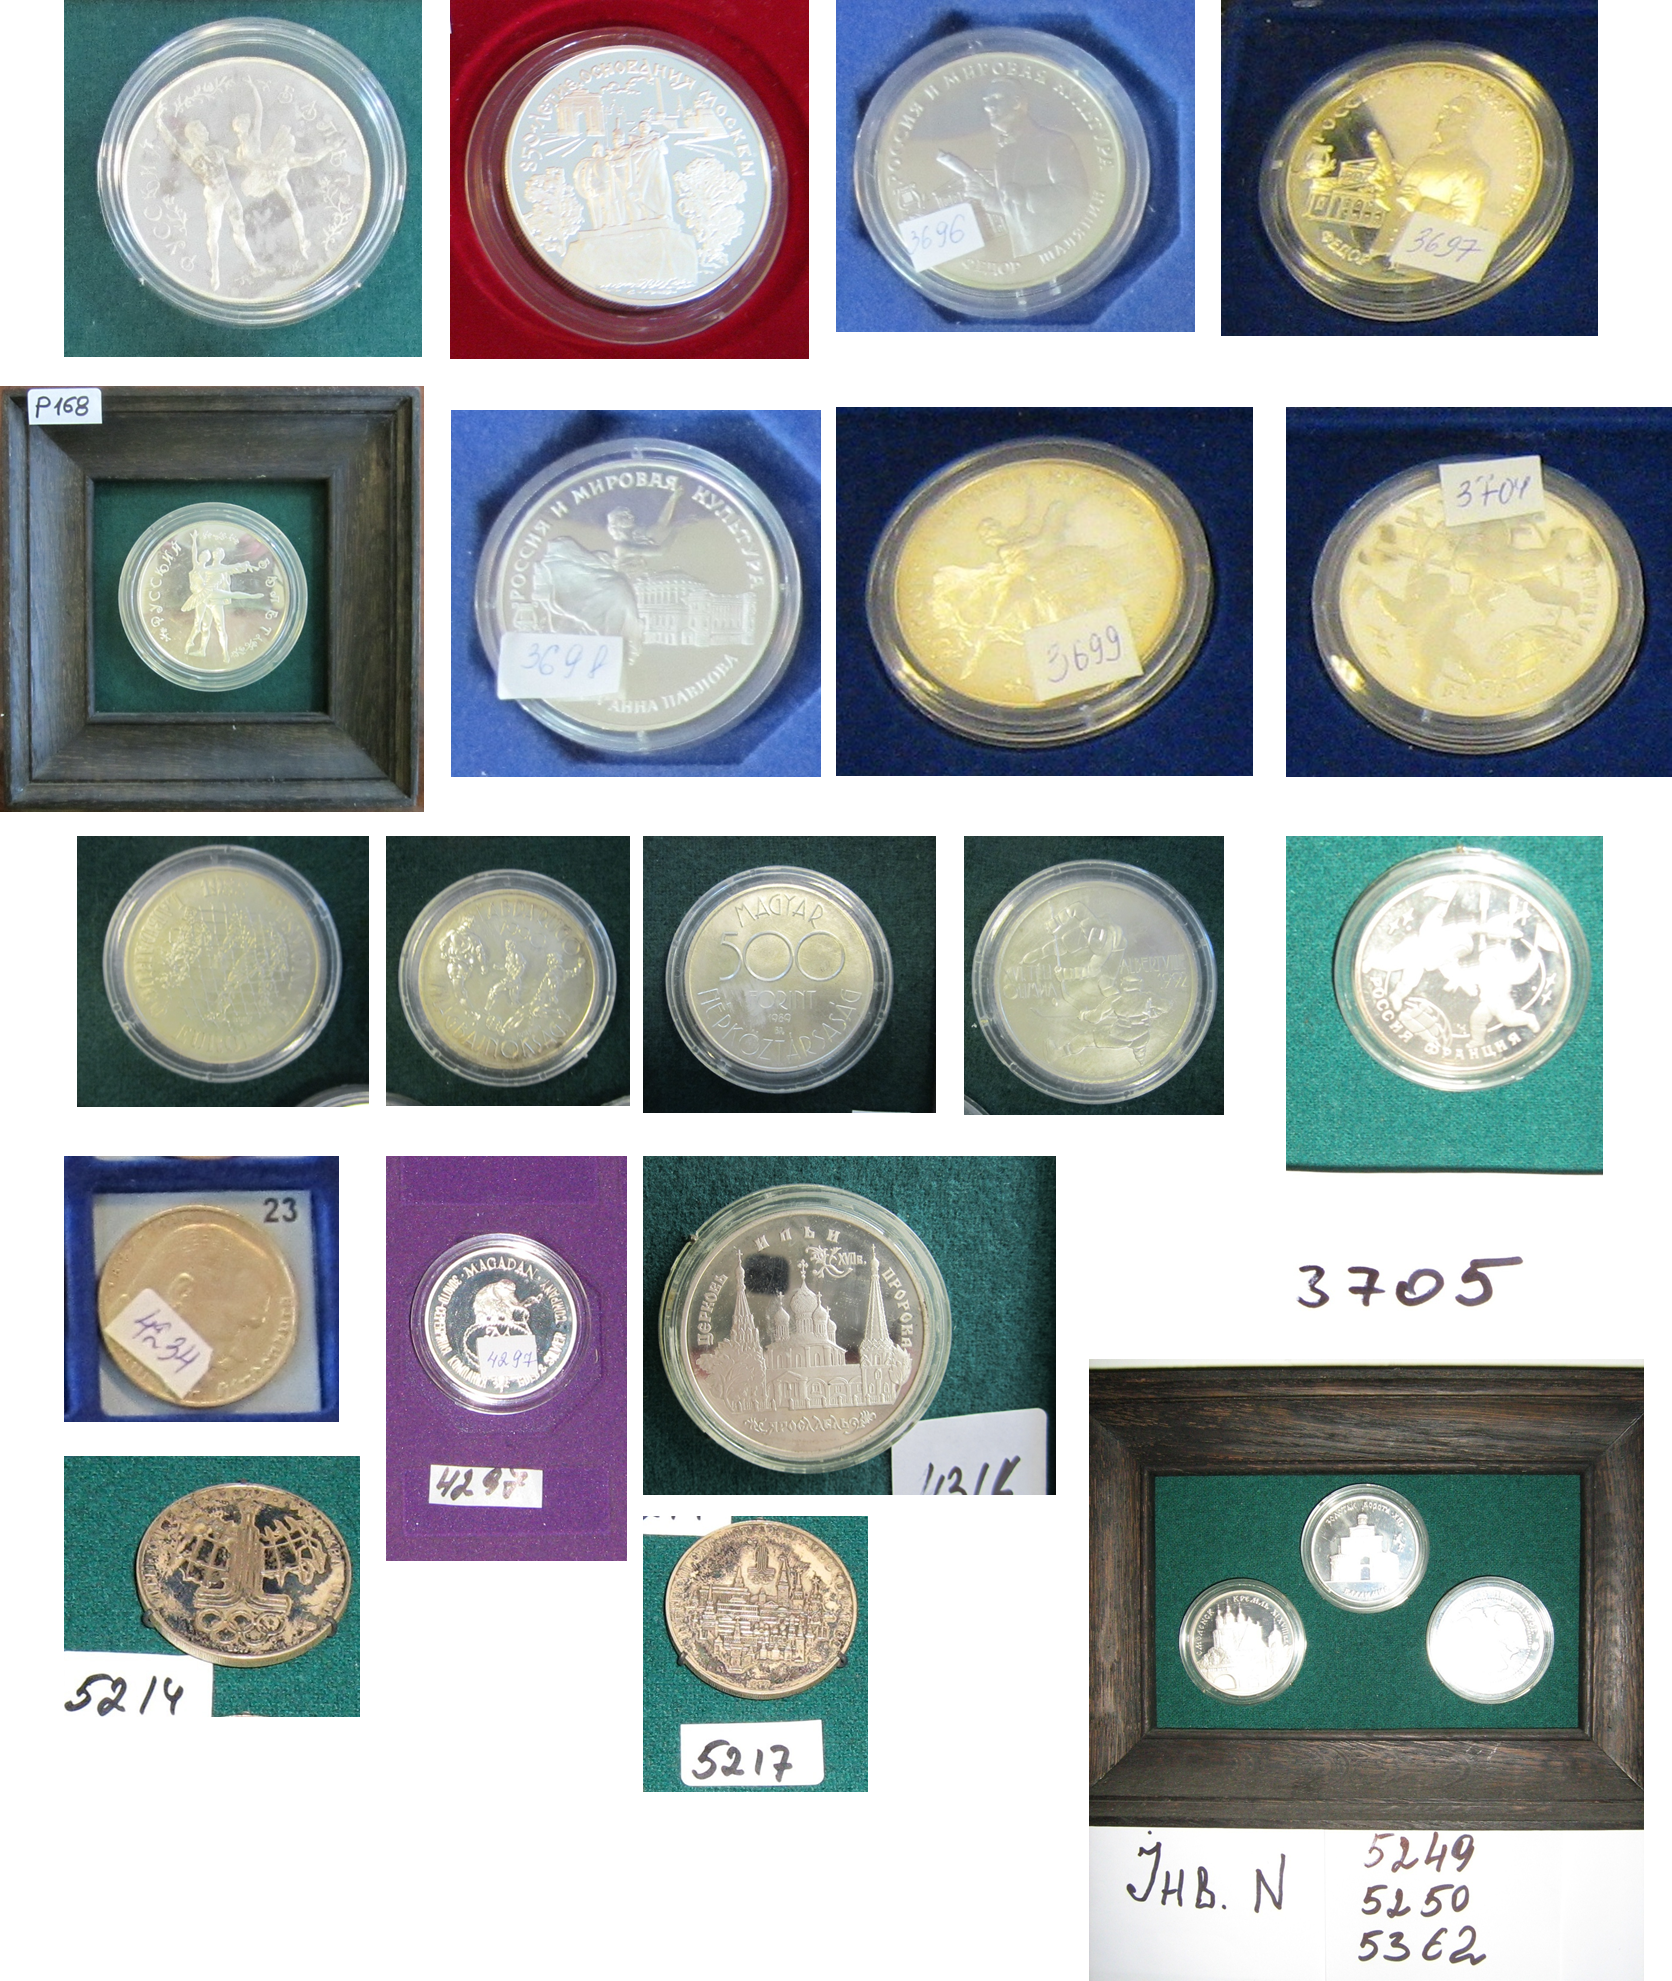 Предмети нумізматики та фалеристики: колекційні срібні монети у кількості 44 одиниць (детальна інформація в публічному паспорті активу)